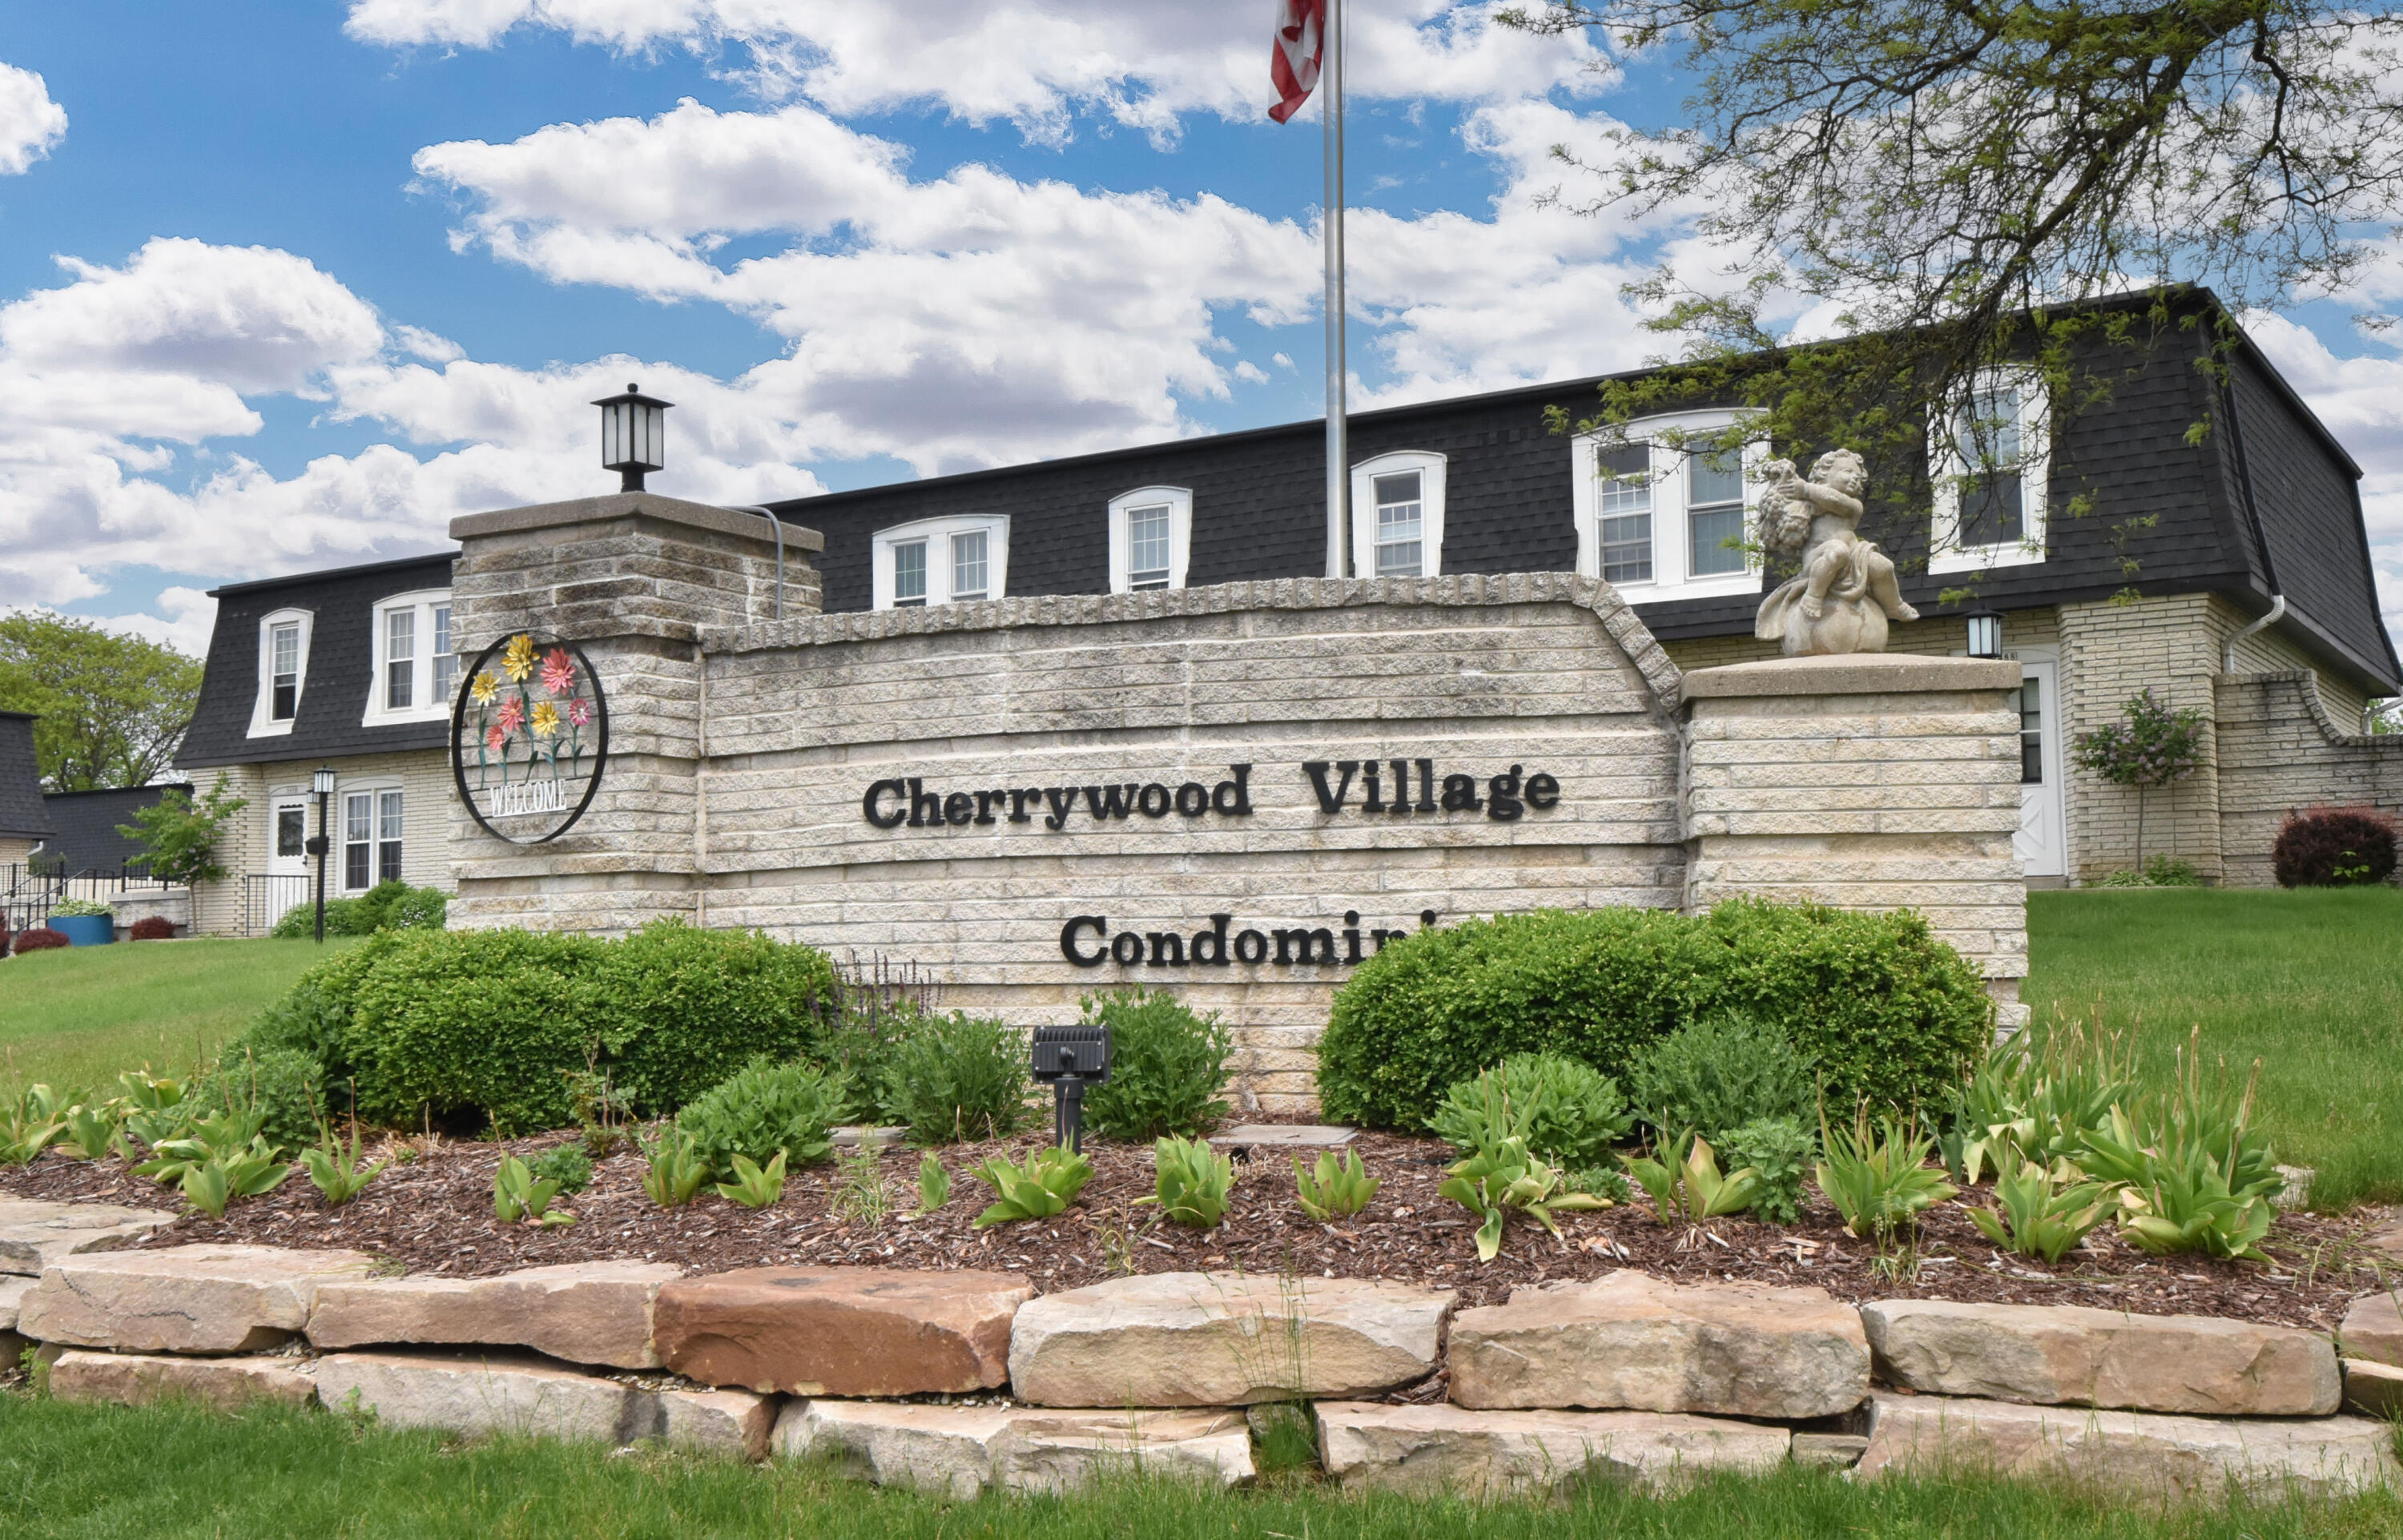 Cherrywood Village